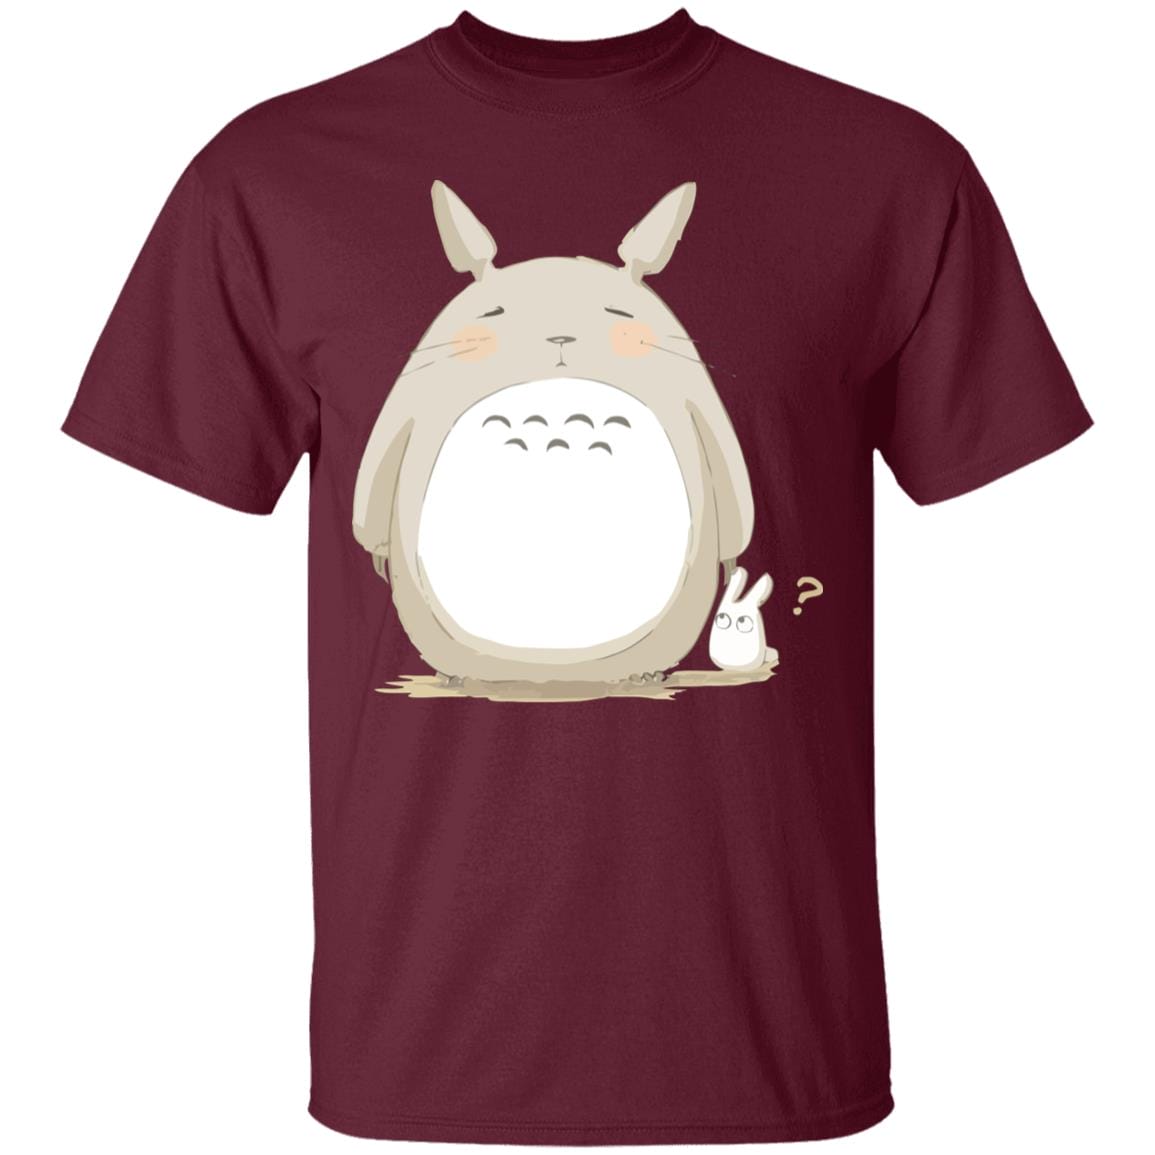 Cute Totoro Pinky Face T Shirt Ghibli Store ghibli.store